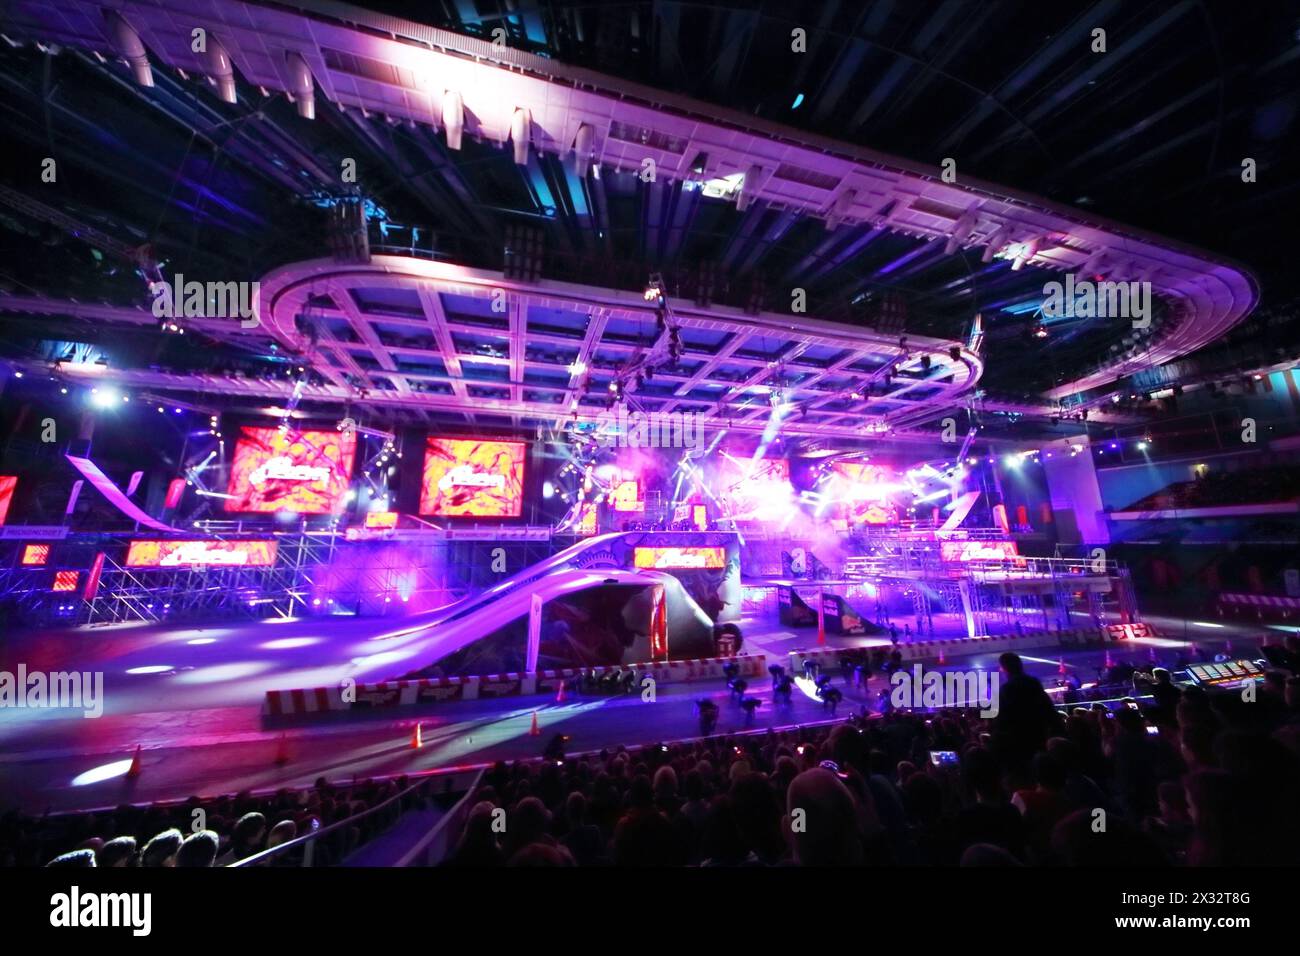 MOSKAU - 02. März: Durchbruch des Extreme Sports Festival 2013 in der Arena des Olympischen Sportkomplexes, am 02. März 2013 in Moskau, Russland. Stockfoto